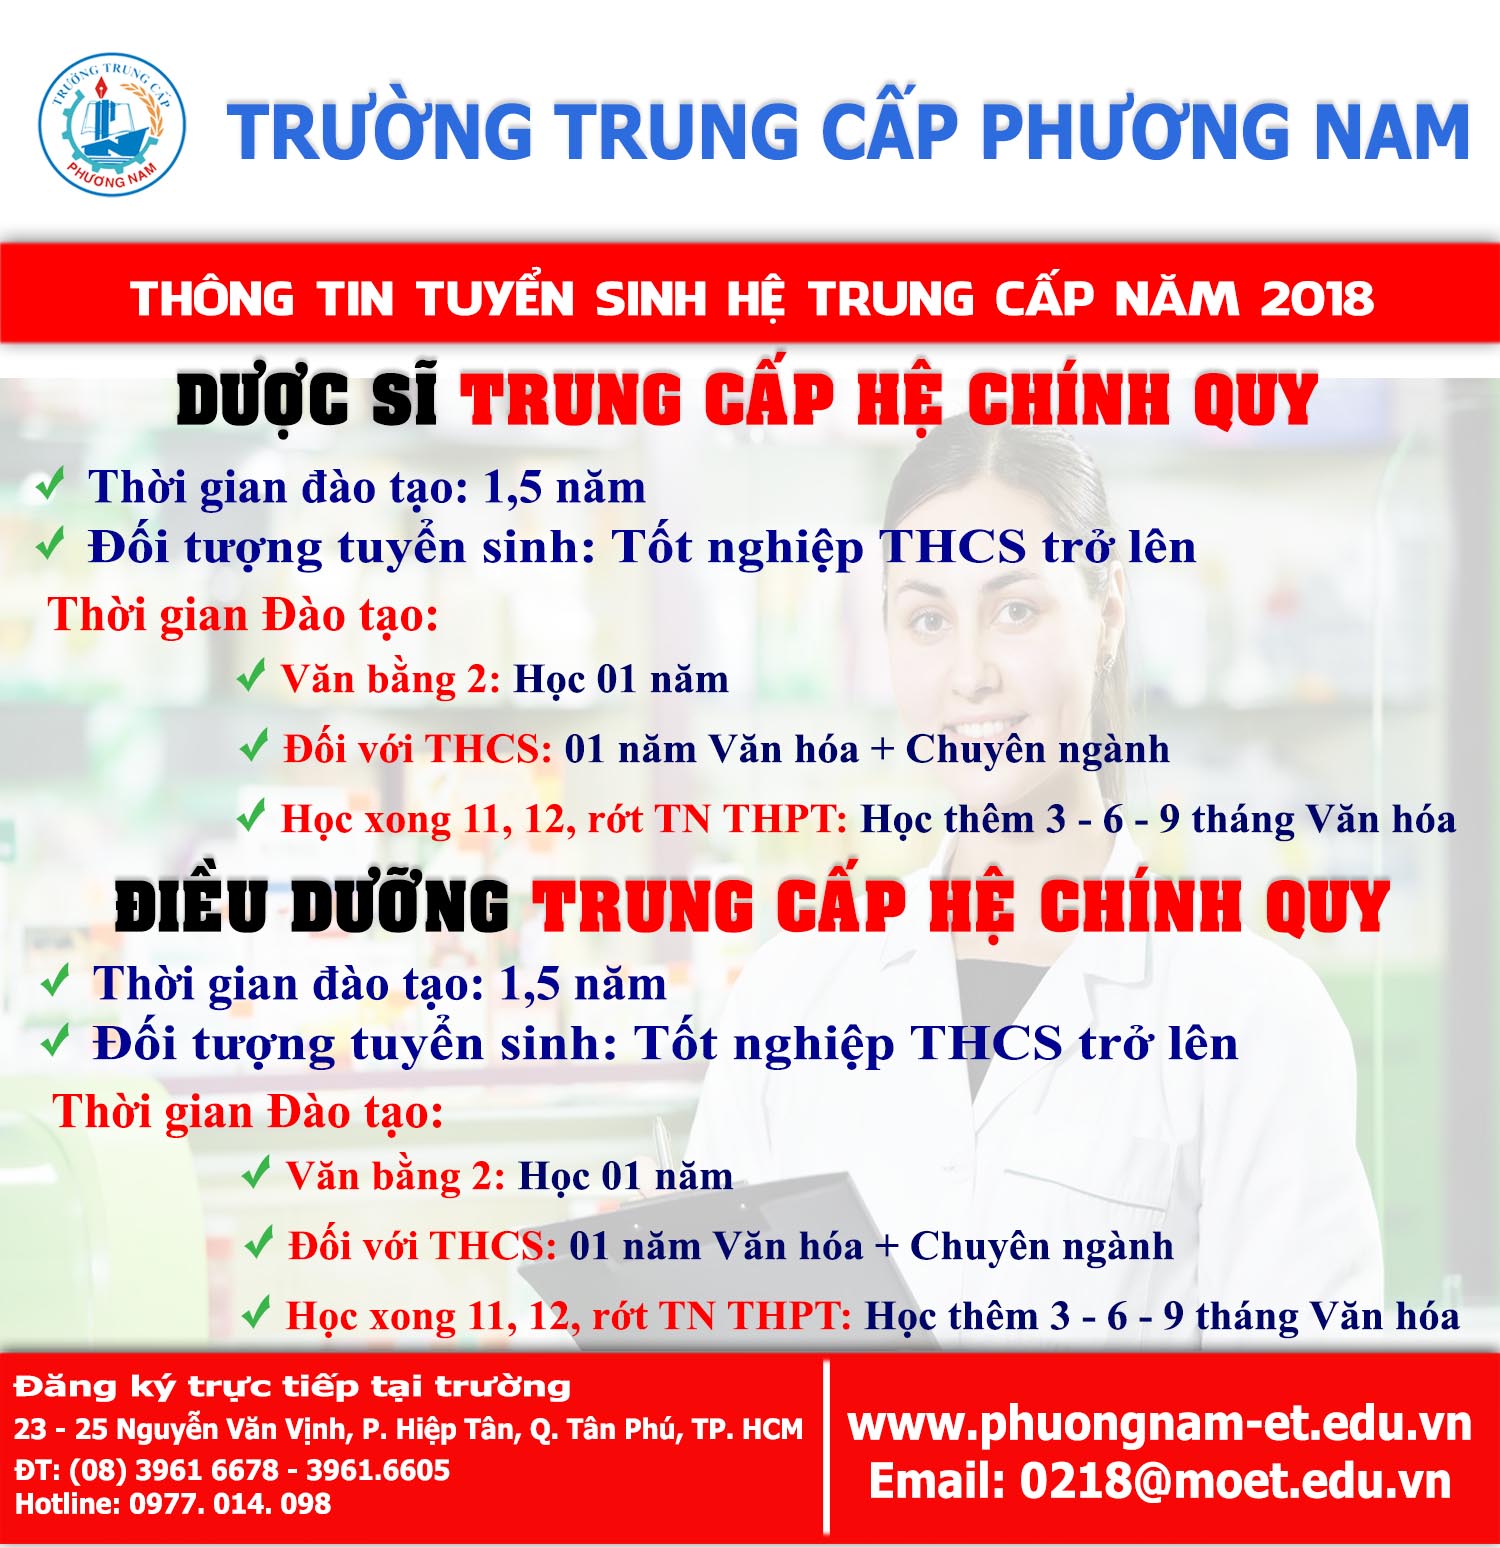 Tuyen Sinh Duoc Dieu Duong01